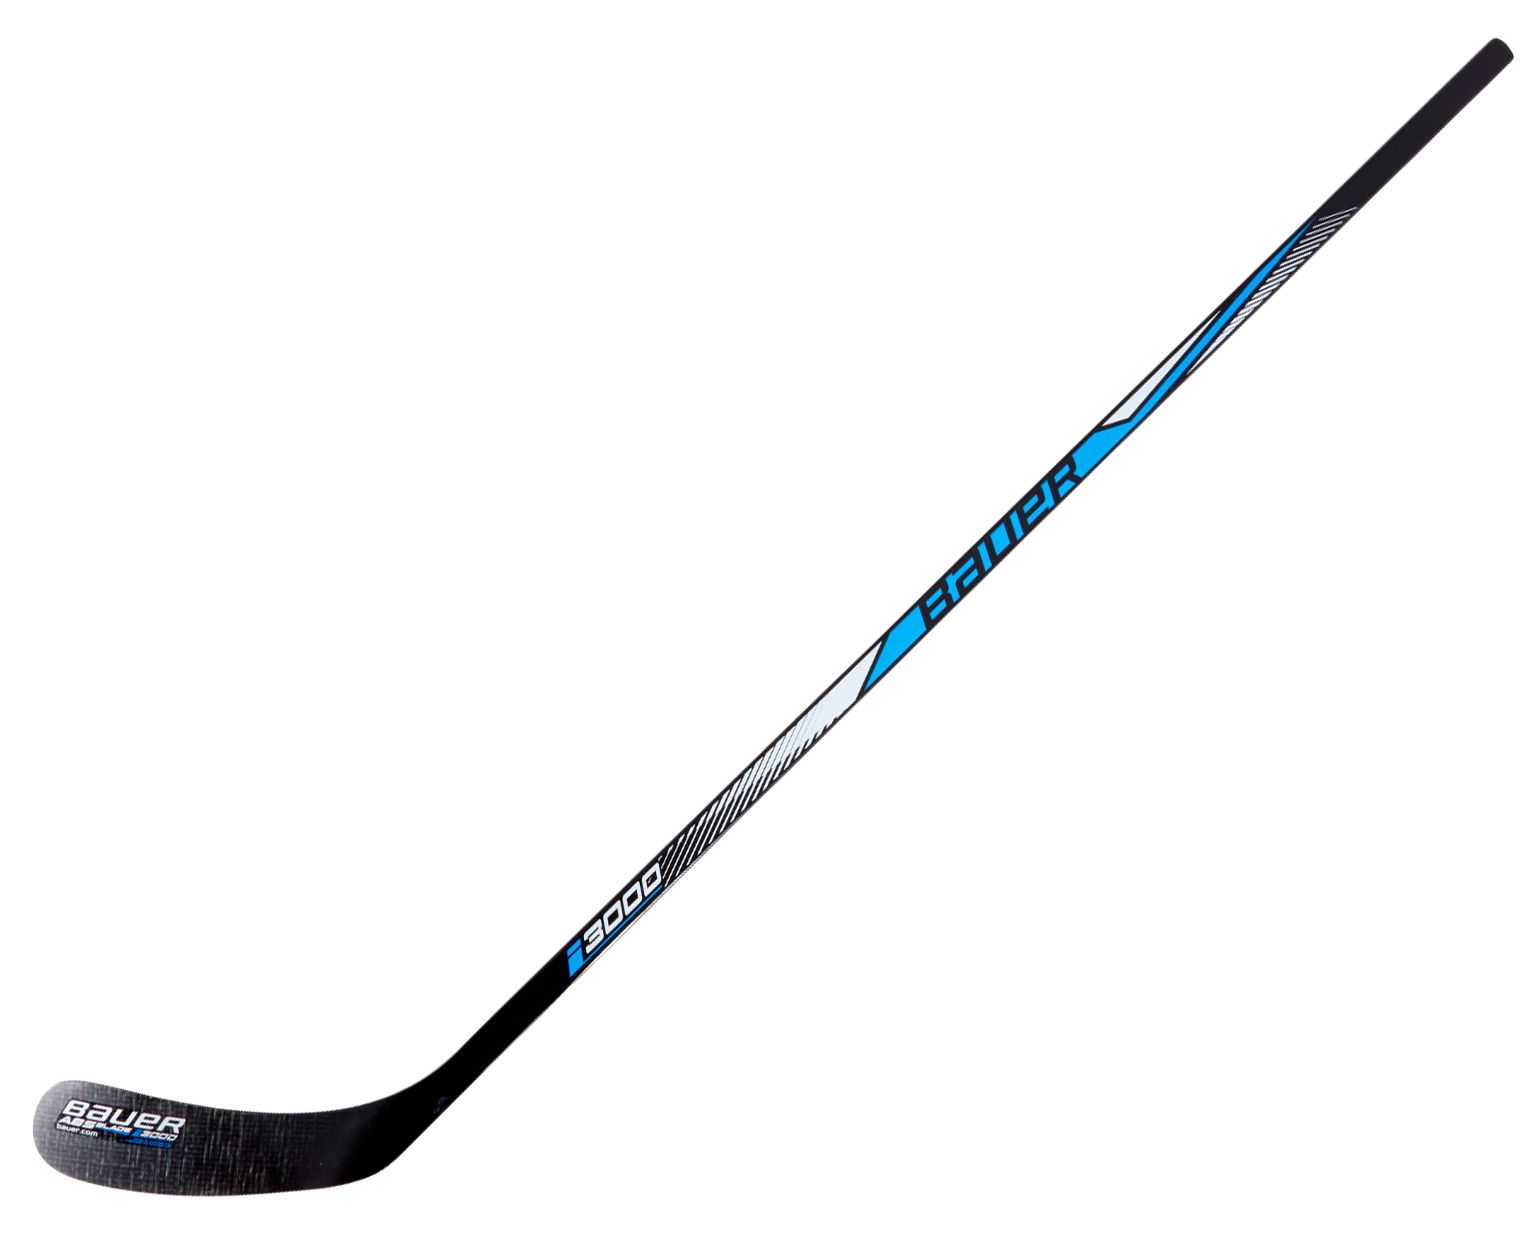 Bauer I3000 Street Hockey Stick - Senior